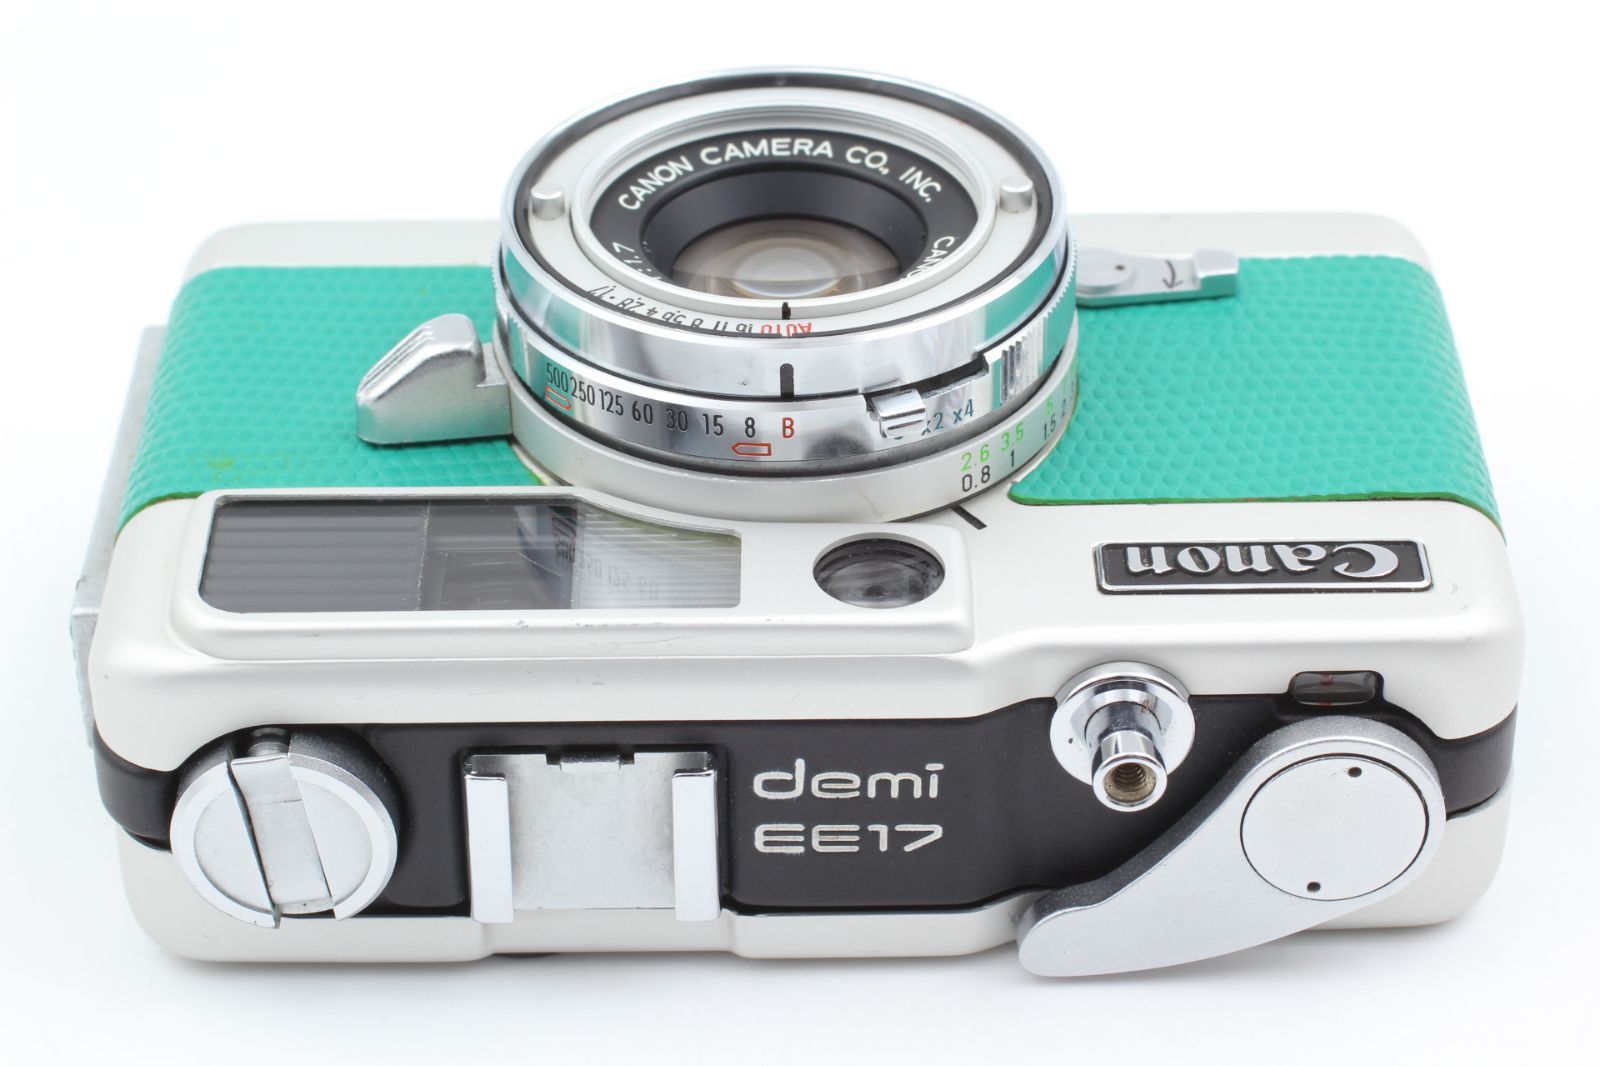 並品 Canon Demi EE17 ハーフフレームカメラ 露出計-OK-